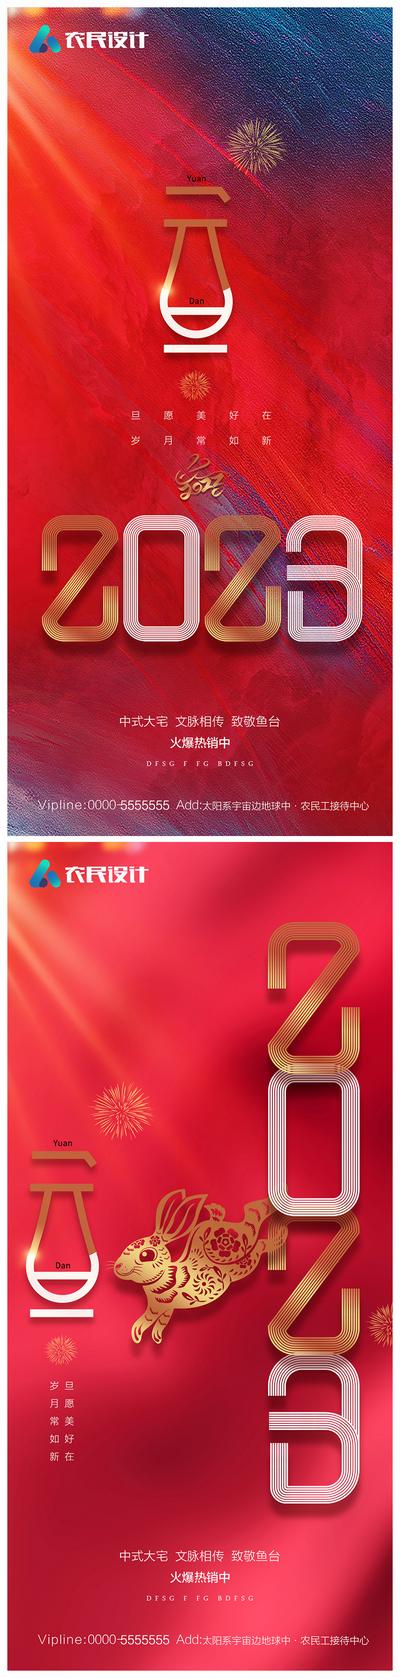 南门网 海报 公历节日 元旦 兔年 数字 红金 系列